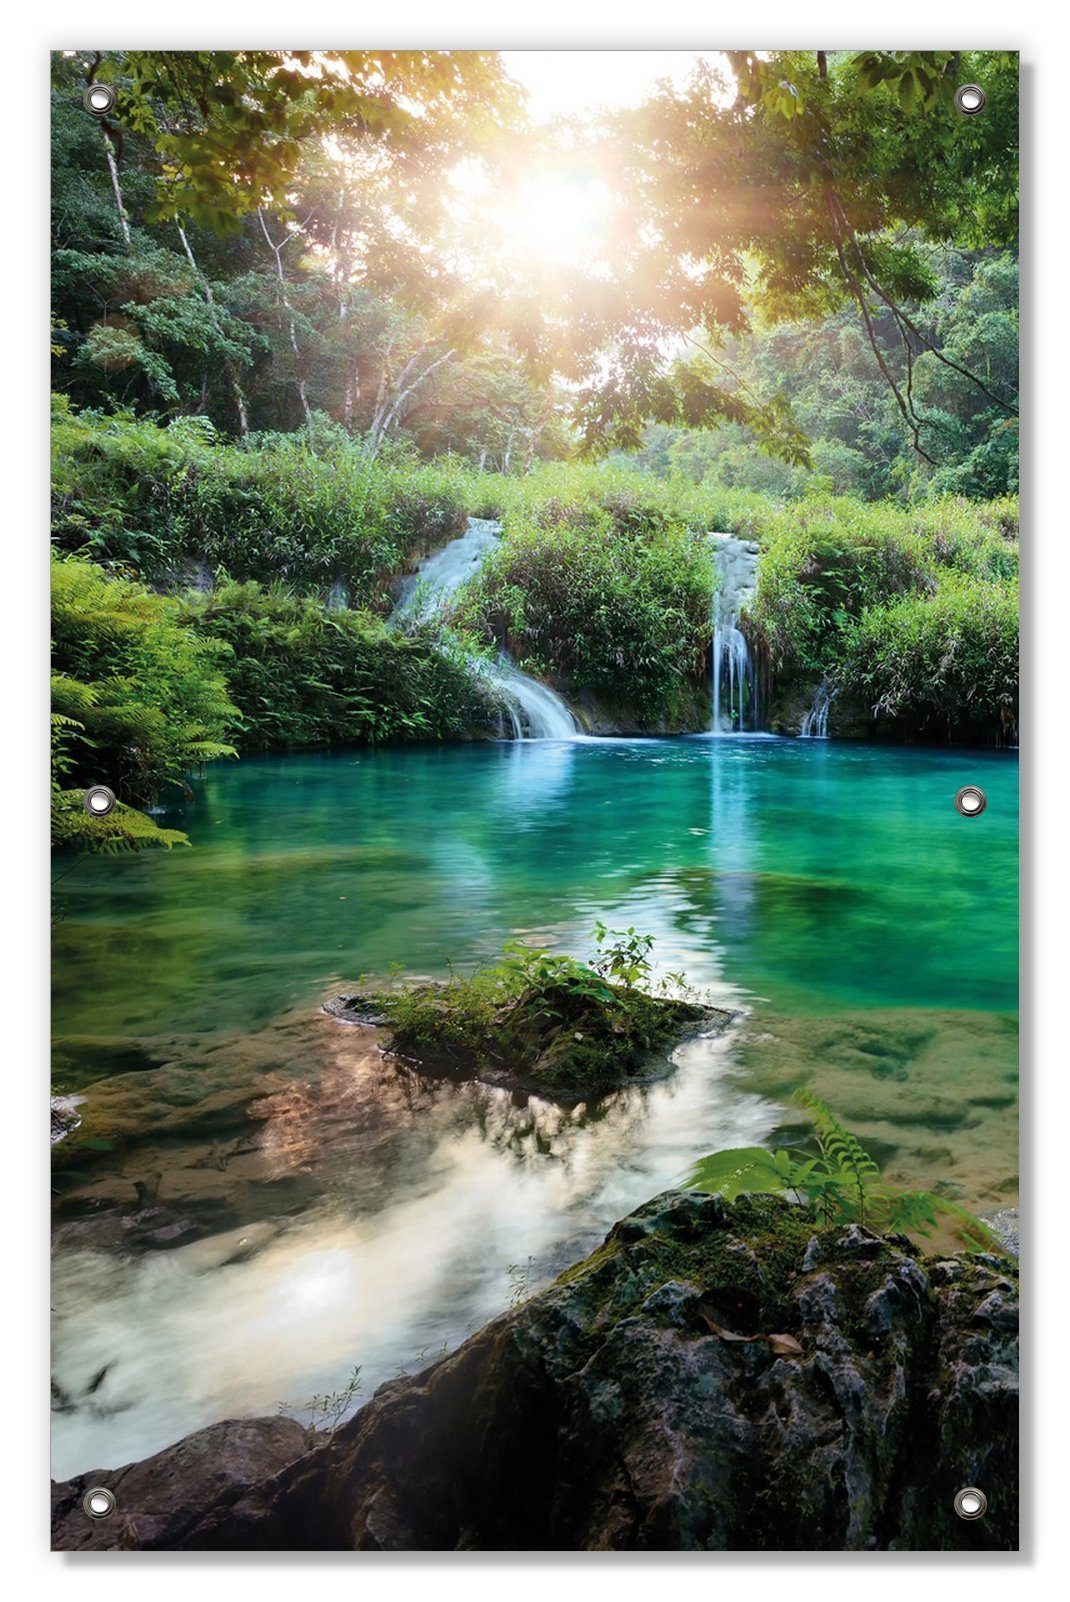 100%ige Garantie Sonnenschutz Türkisgrüner See im Nationalpark Wallario, in blickdicht, Saugnäpfen, wiederablösbar mit Guatemala, wiederverwendbar und